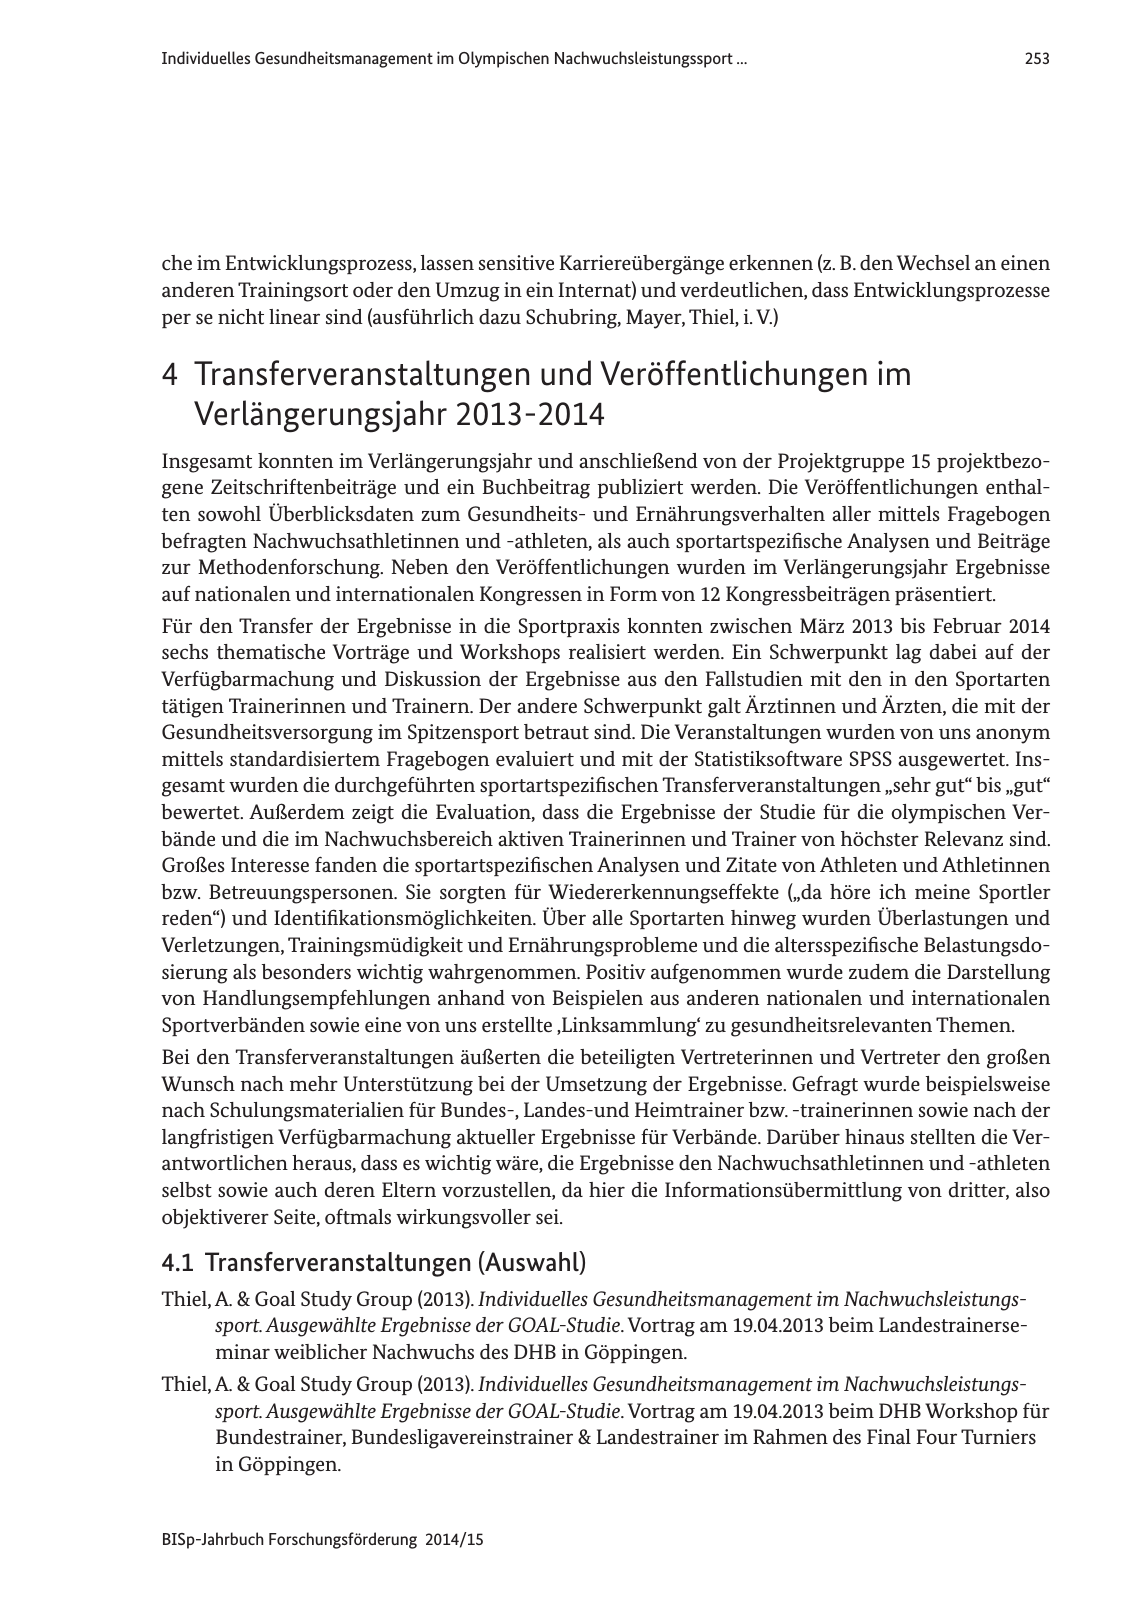 Vorschau Jahrbuch 2014/15 Seite 254